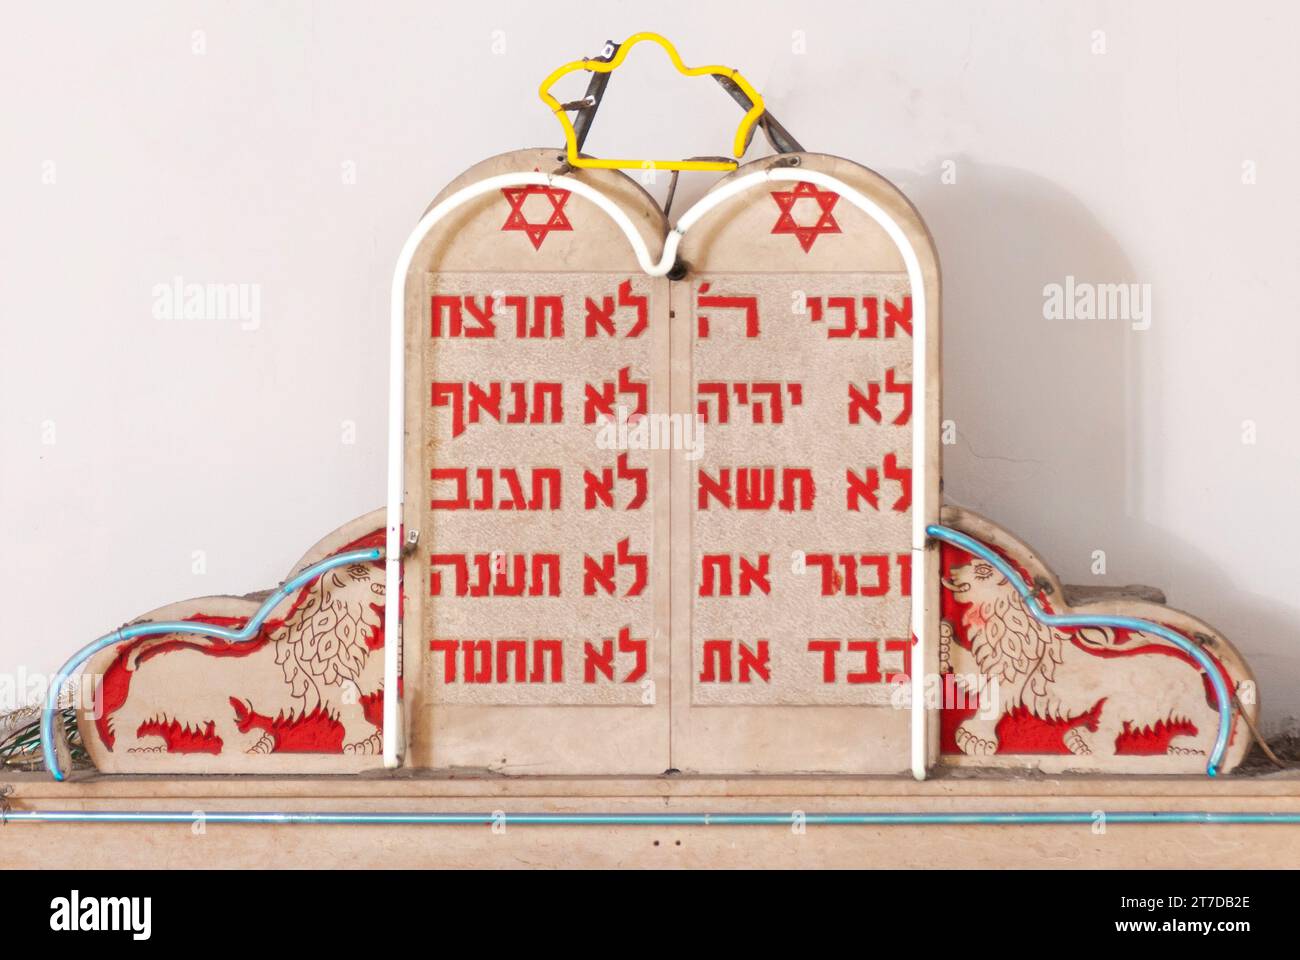 Petit modèle des dix Commandements tablettes de pierre de la Bible hébraïque écrites en hébreu en peinture rouge sur un piédestal dans une synagogue en Israël. Banque D'Images